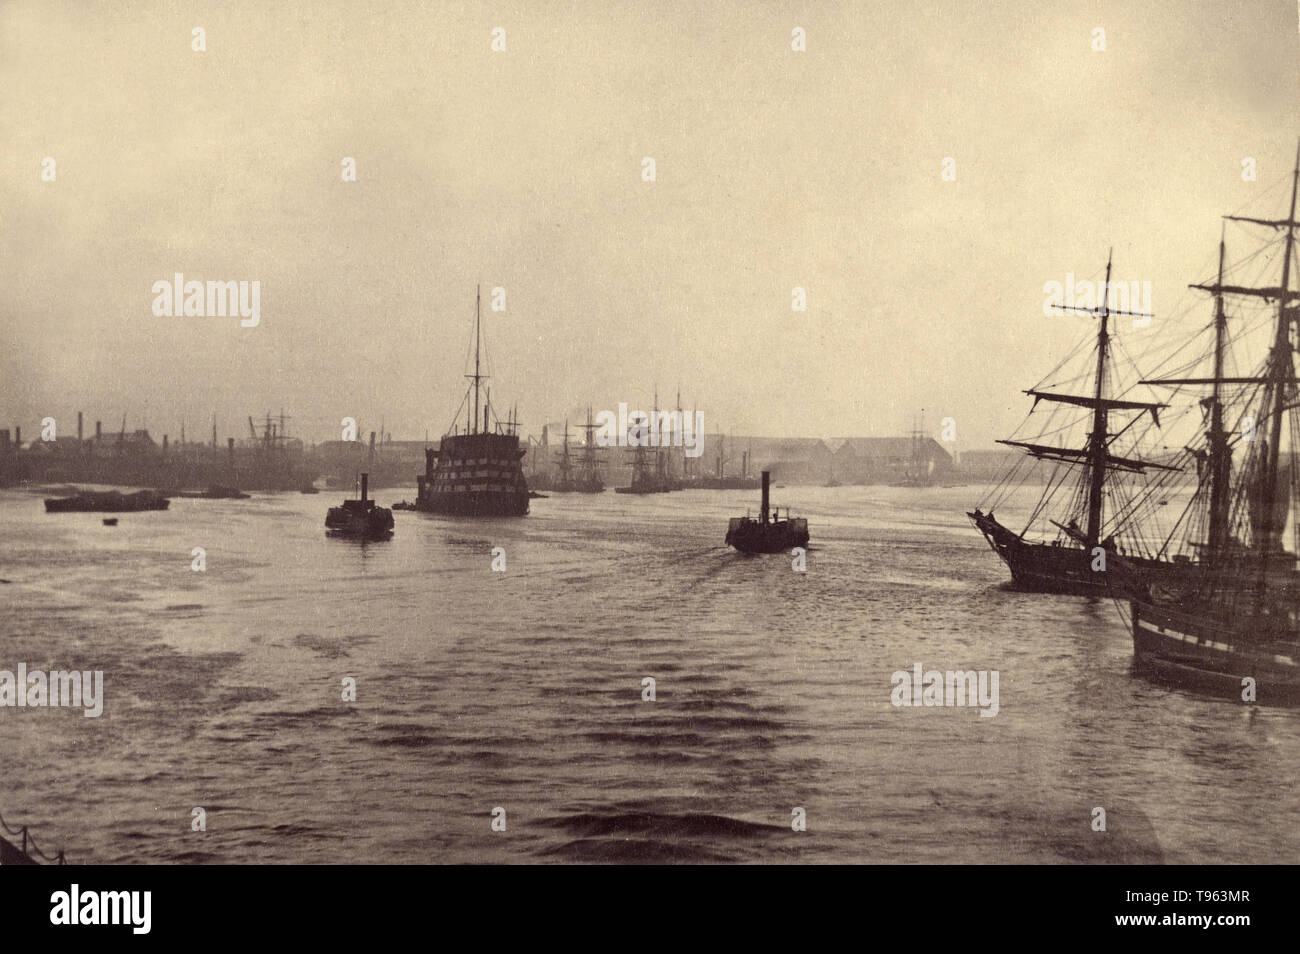 Blick auf Schiffe auf der Themse nach Greenwich, C. 1870. Fotografiert von Ludwig Schultz (Briten, aktive Greenwich, England 1860). Stockfoto